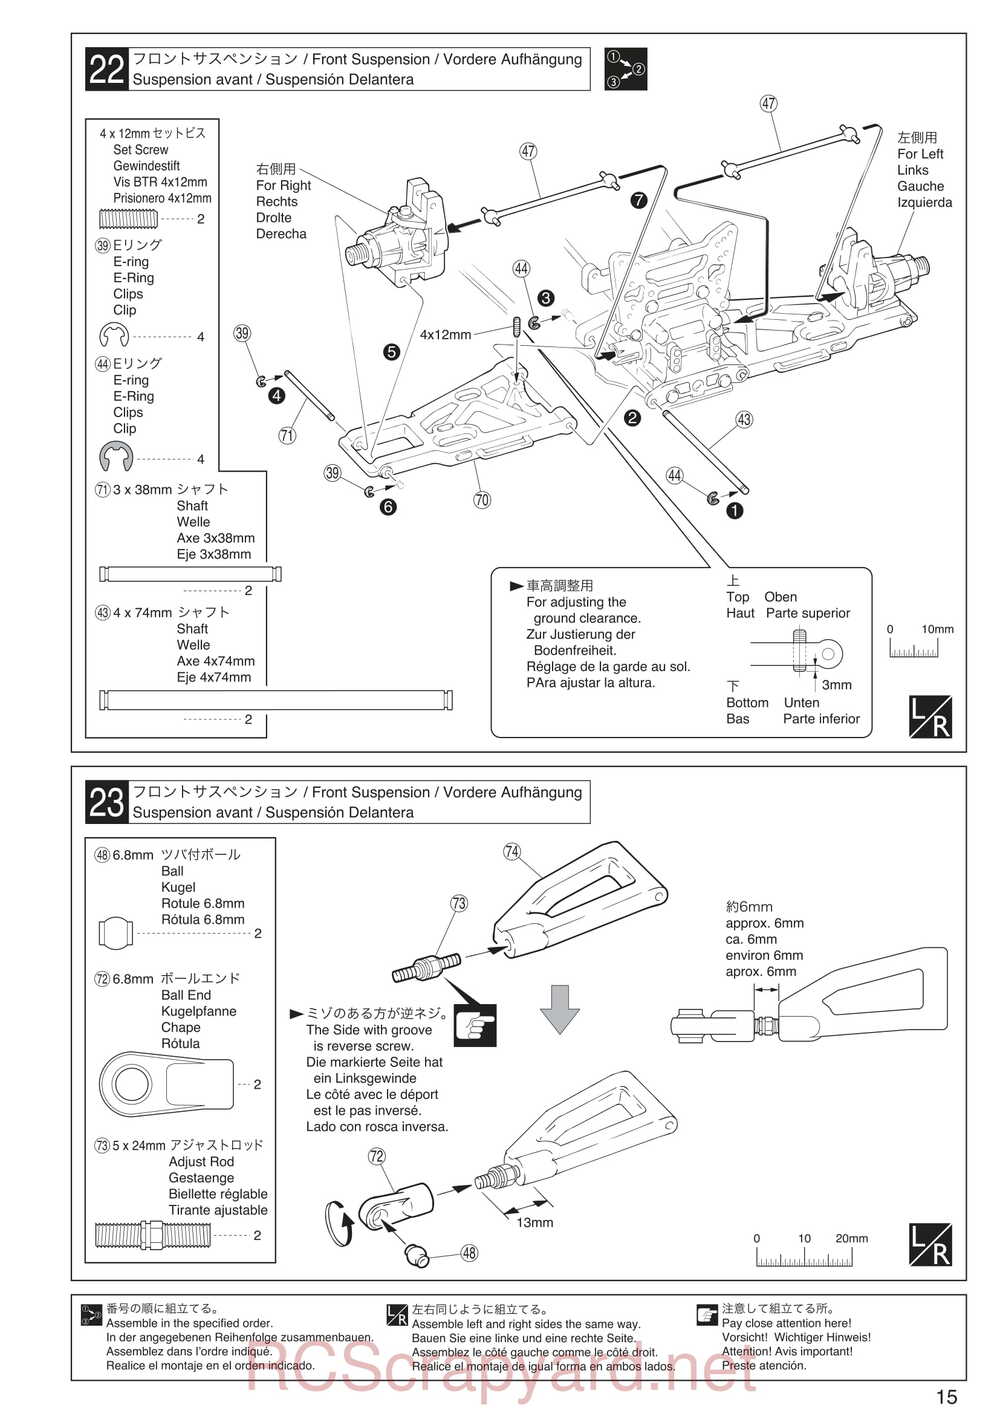 Kyosho - 30935 - Inferno GT2 VE Race-Spec - Manual - Page 15